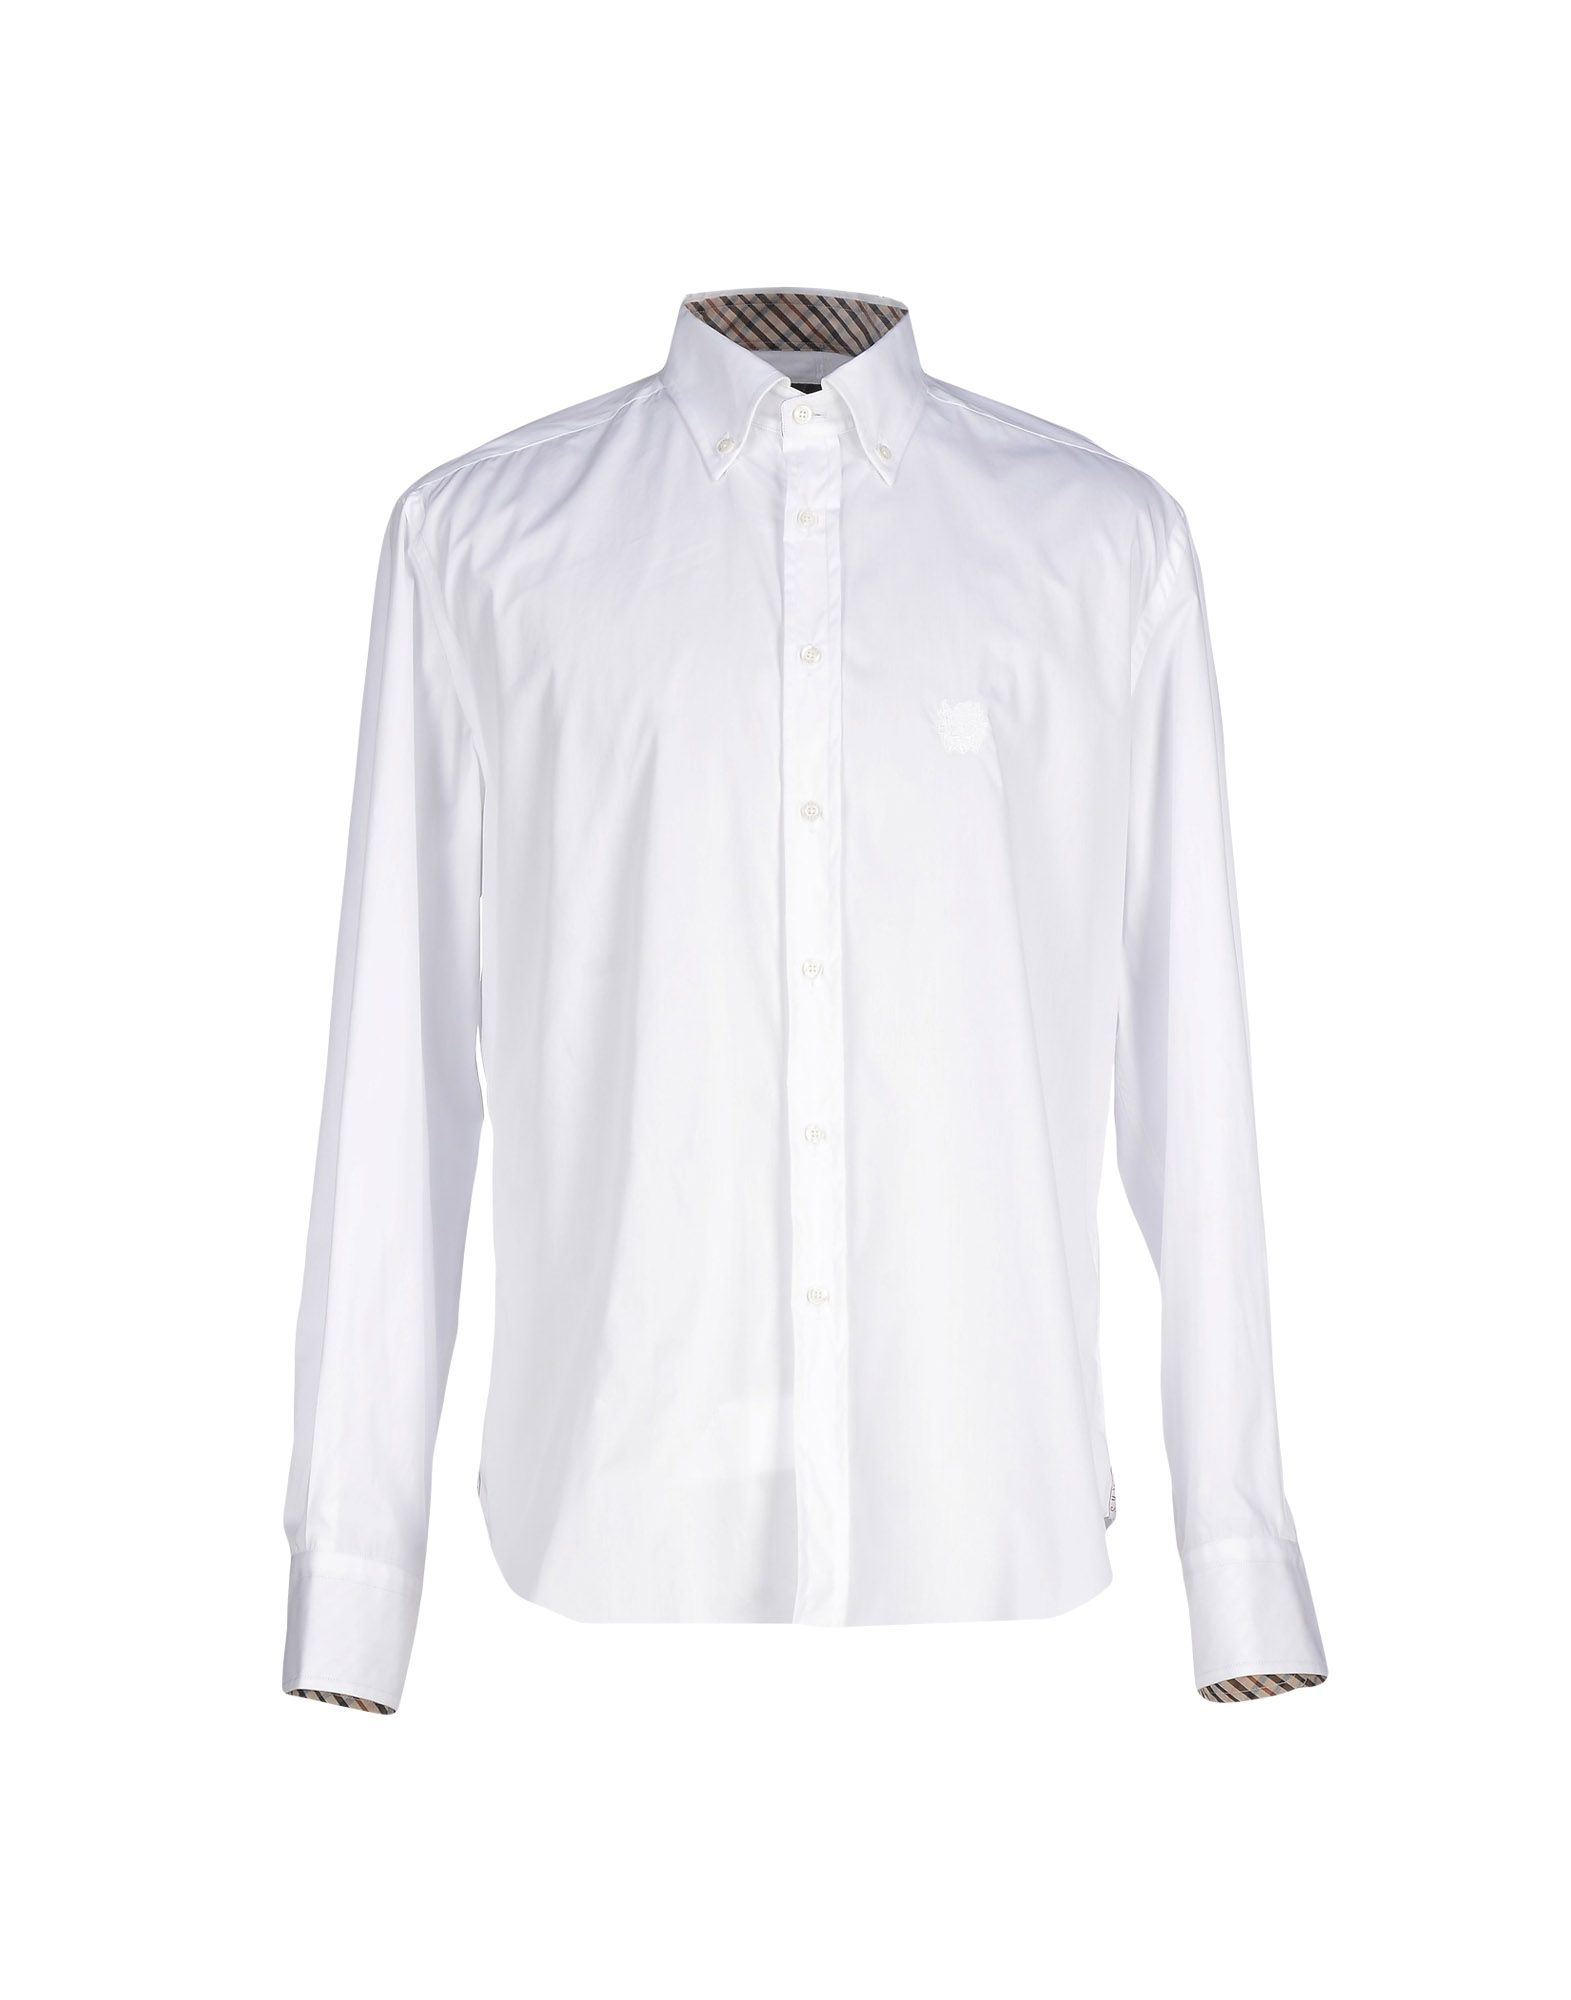 Lyst - Daks Shirt in White for Men